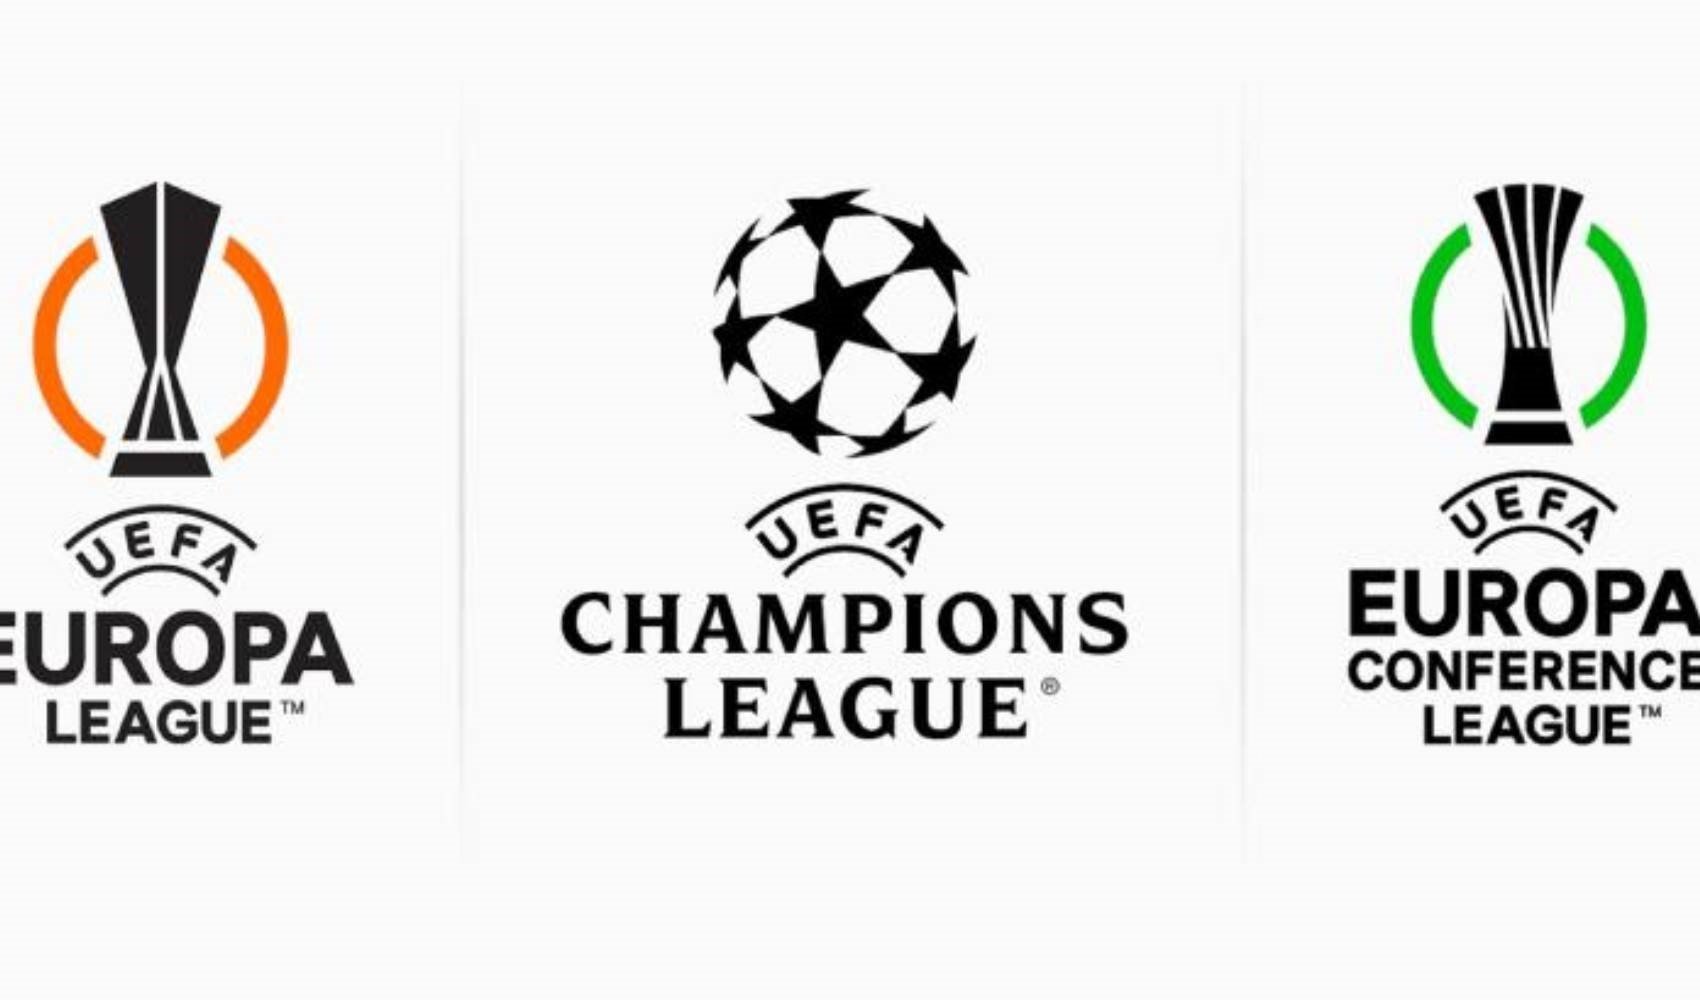 Fenerbahçe, Trabzonspor ve Başakşehir...  Şampiyonlar Ligi, Avrupa ve Konferans Ligi'nde temsilcilerimizin rakipleri belli oluyor